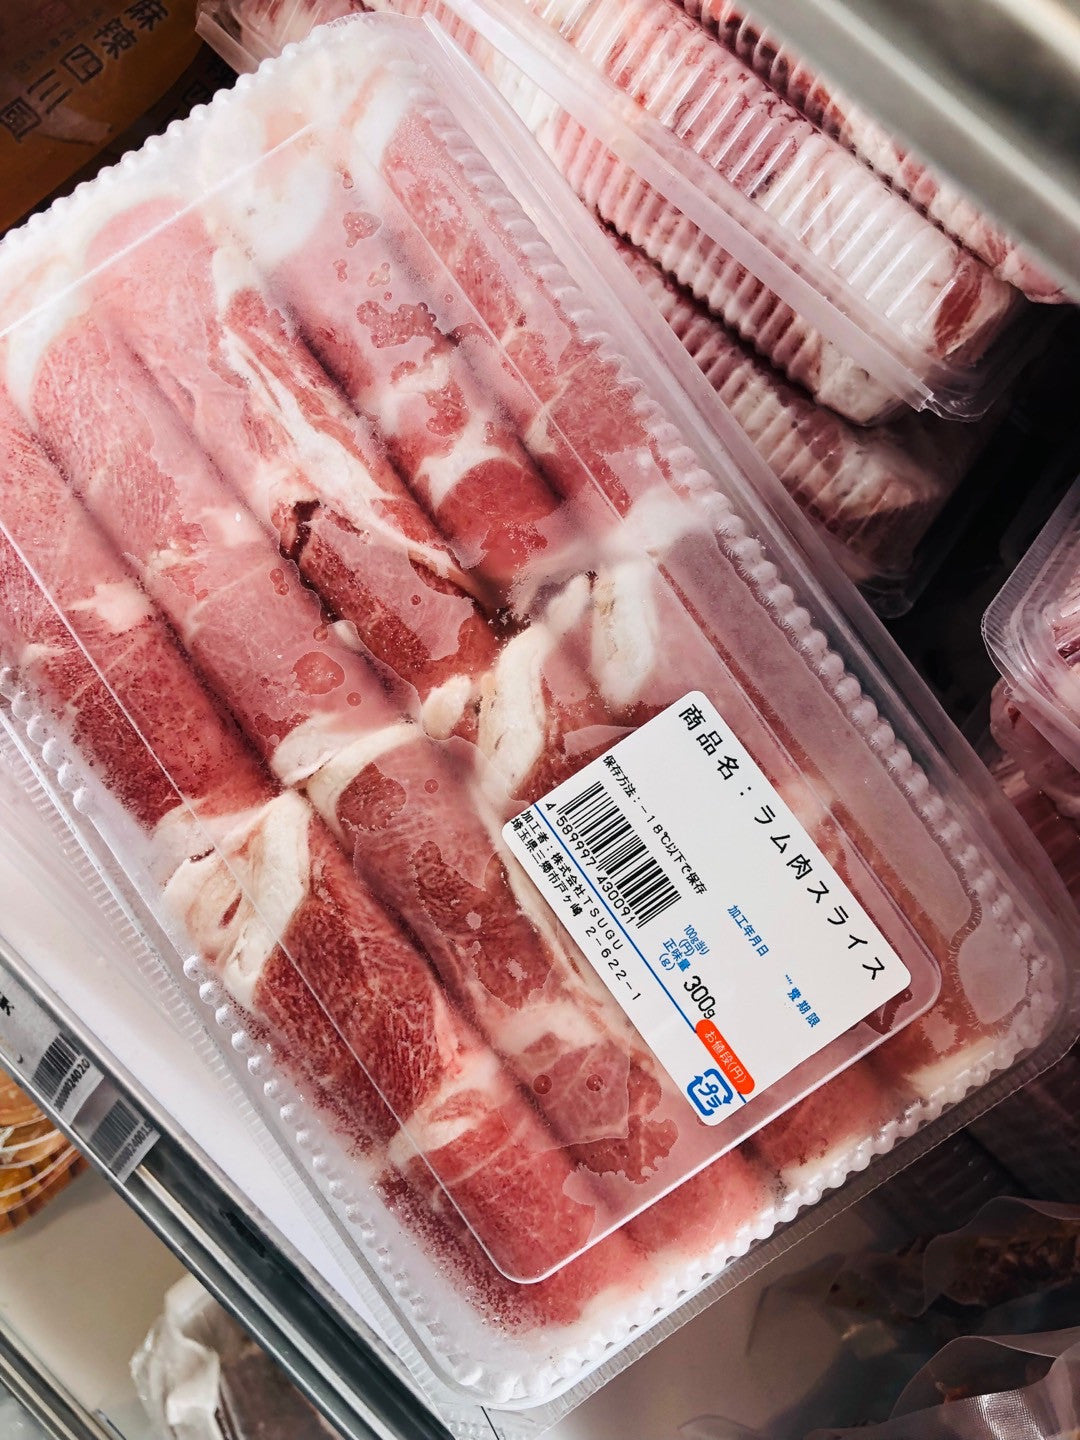 羊肉卷 火鍋用羊肉卷300g ラム 冷凍品